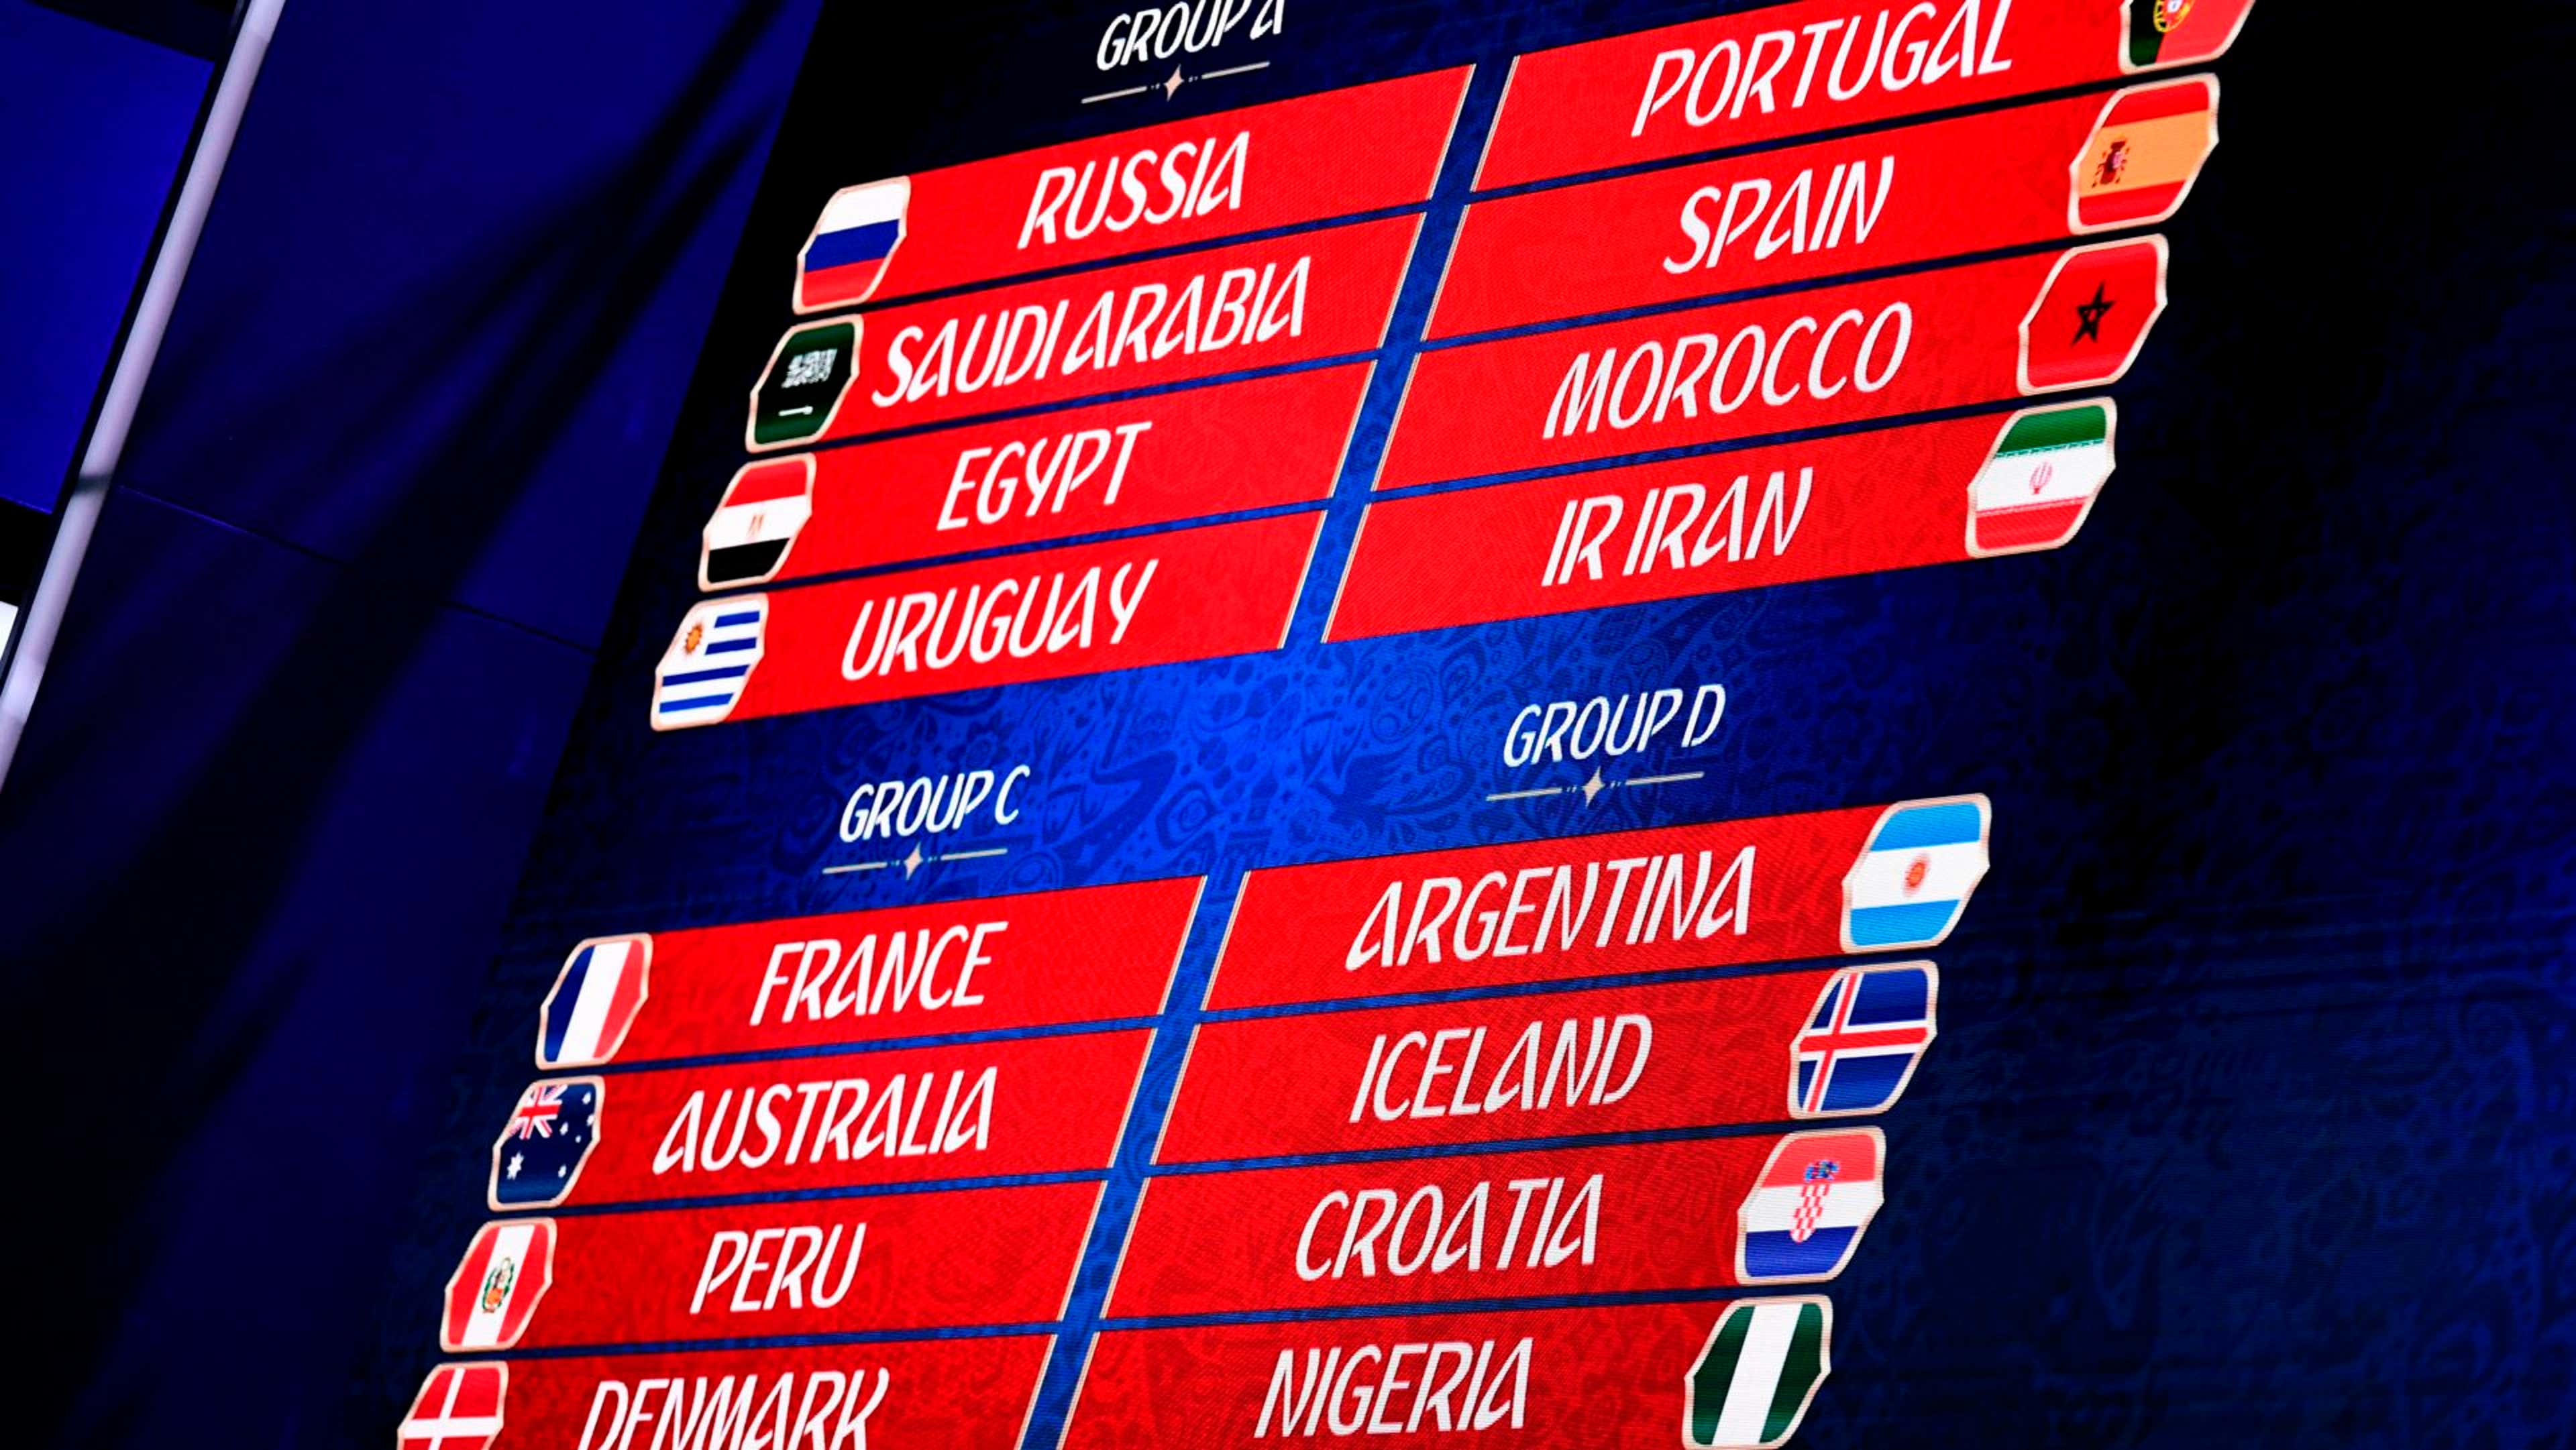 Análise dos grupos da Copa do Mundo 2018 - SoccerBlog